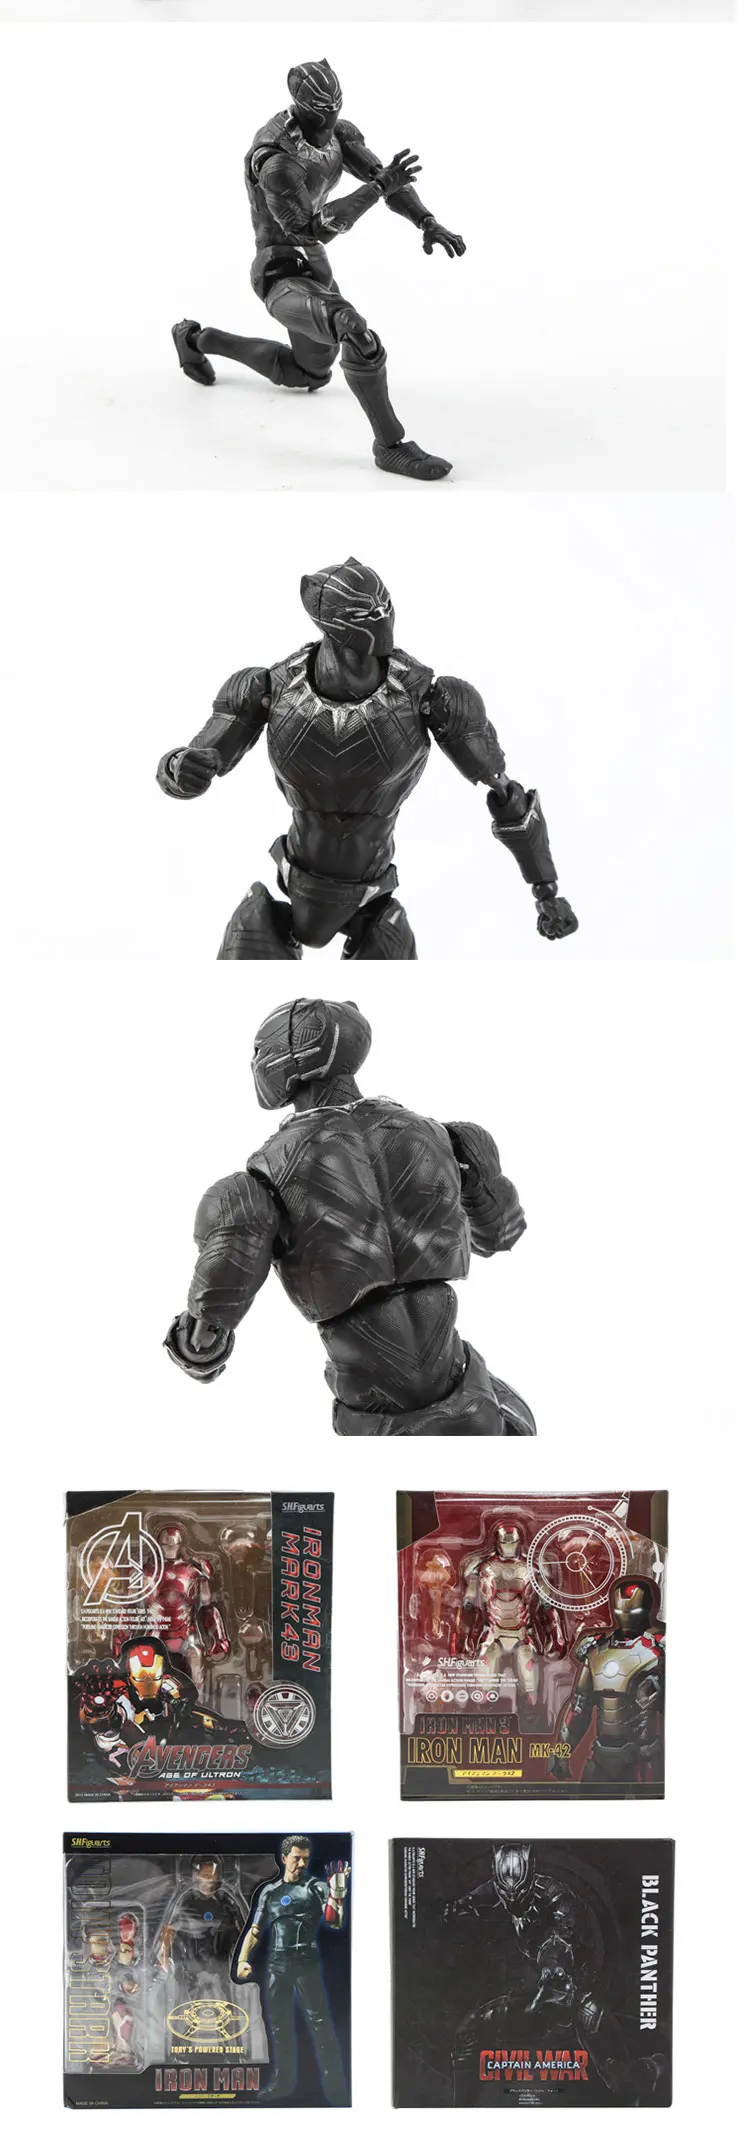 Marvel Железный человек Ironman NMK42 MK43 с диванной antman Черная пантера подвижные ПВХ Фигурки игрушки коллекция игрушек